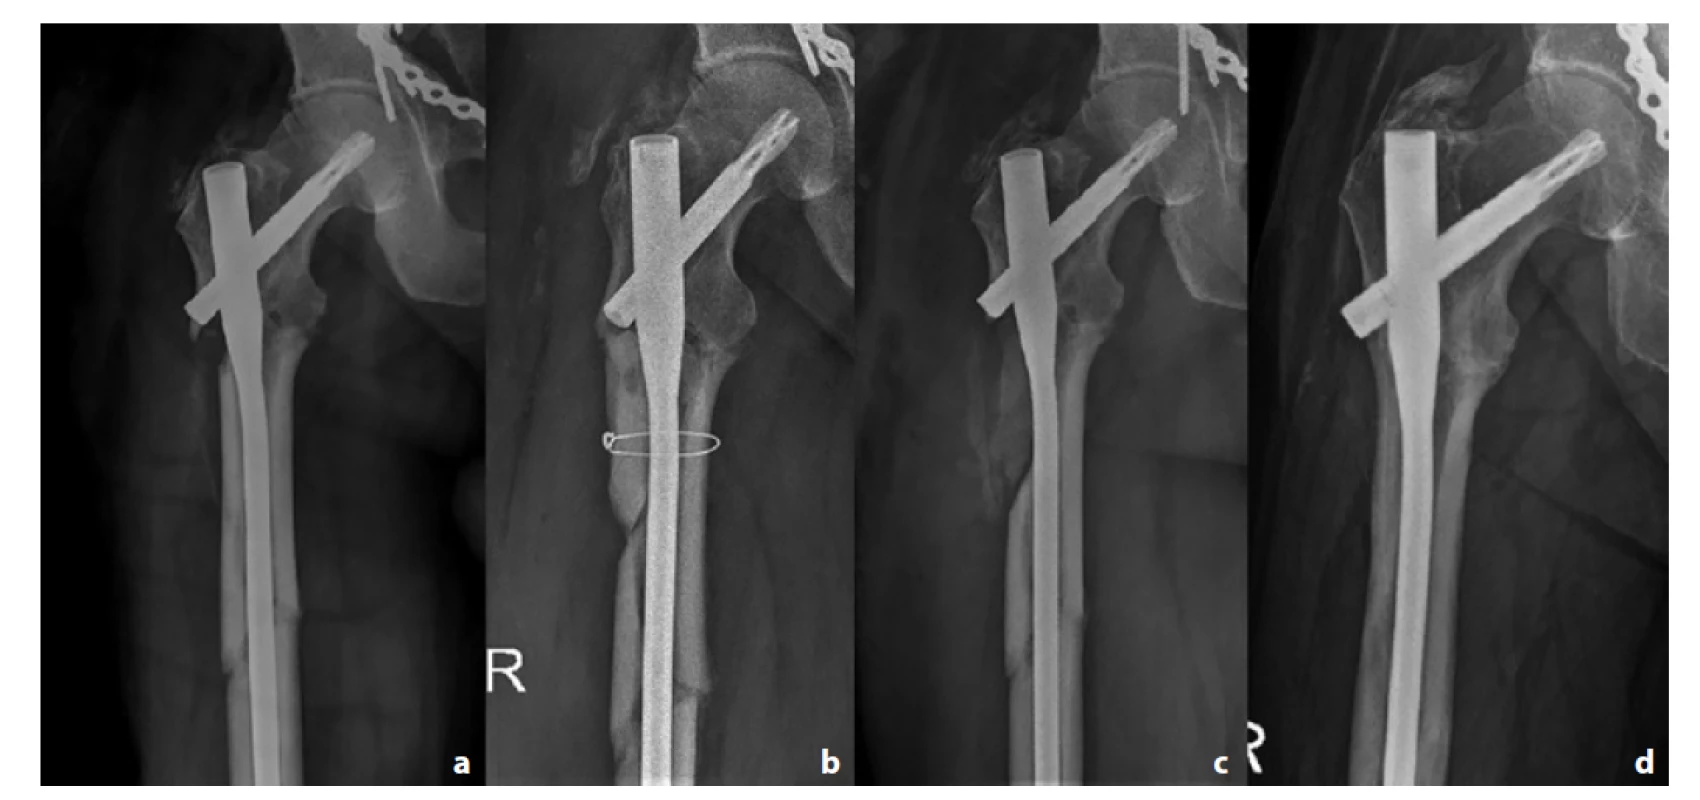 Pacient č. 3; a – úrazový snímek; b – kostní semicirkulární defekt s PMMA spacerem; c – defekt po spongioplastice;
d – plně prostavěný defekt po 2 letech<br>
Fig. 4: Patient 3; a – initial X-ray; b – PMMA spacer inside the semicircular bone defect; c – defect after bone grafting; d –
bone union after 2 years